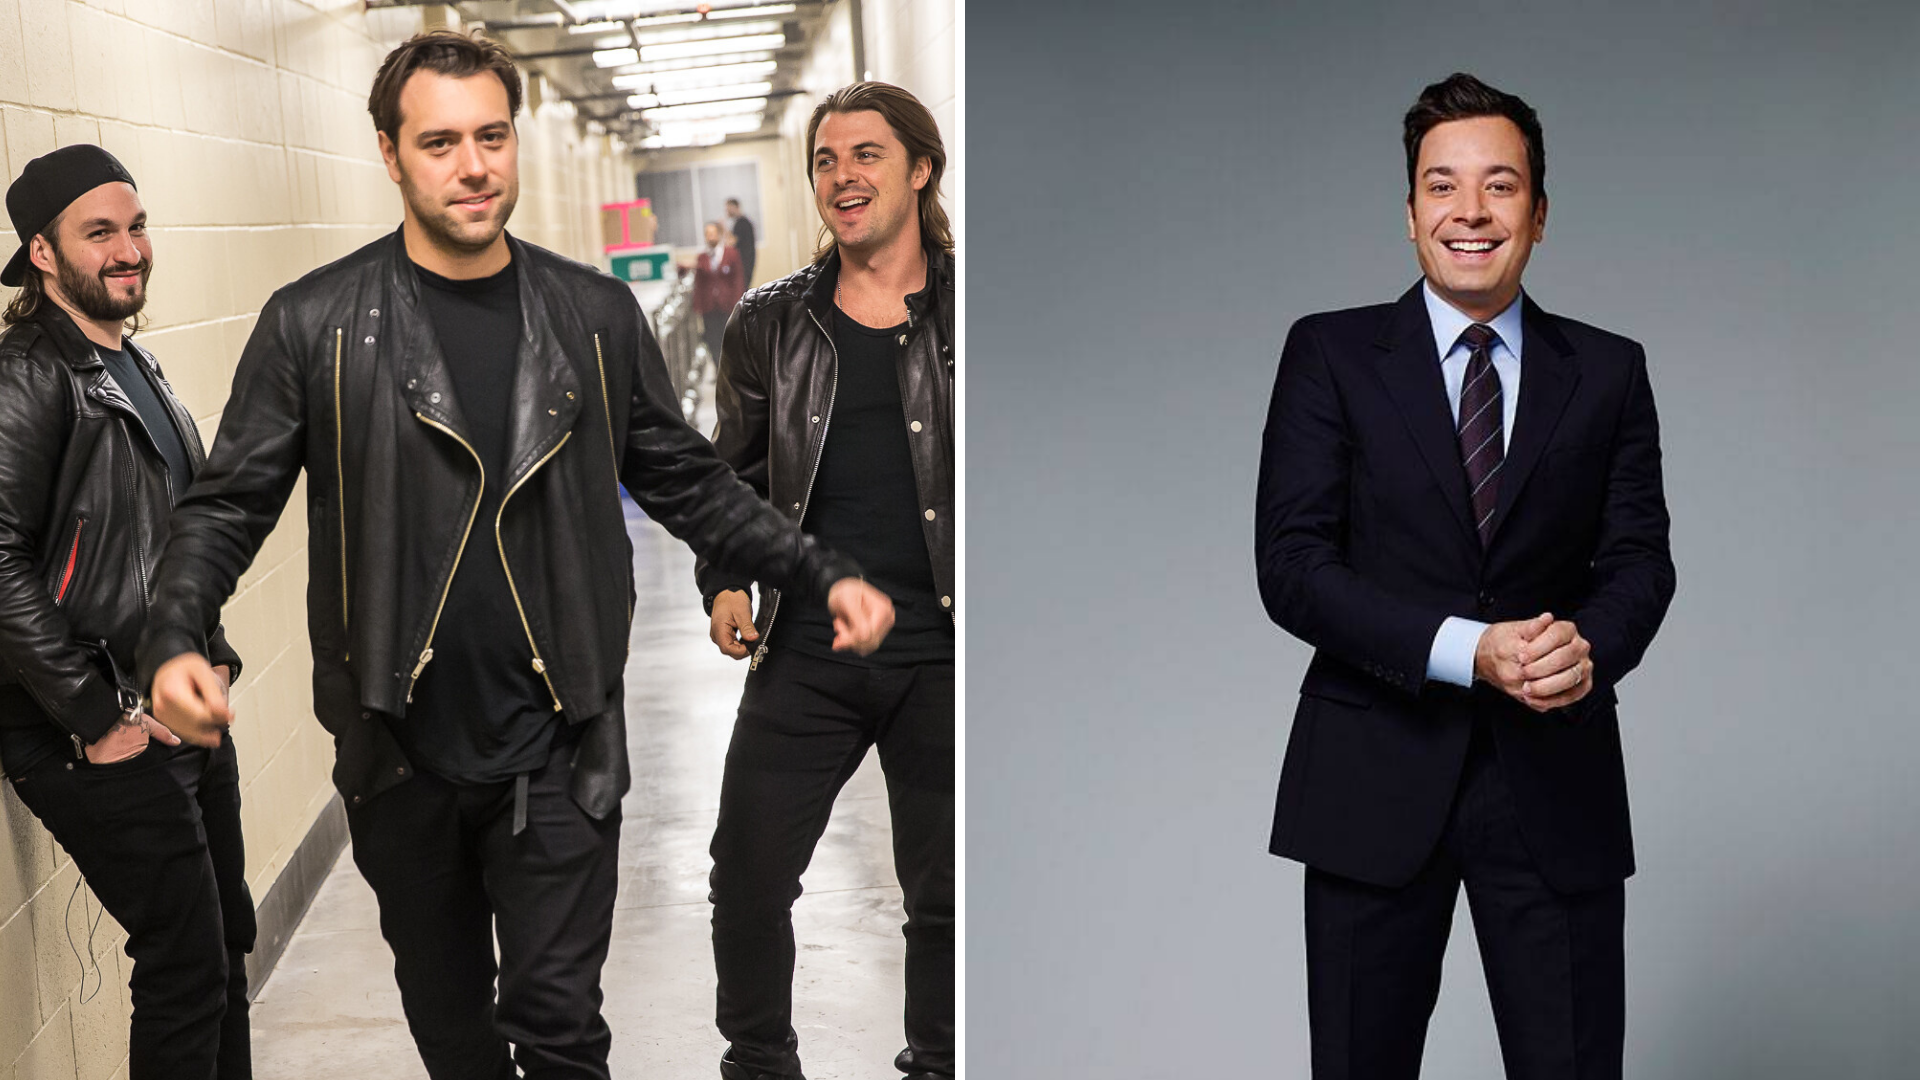 Swedish House Mafia Sẽ Biểu Diễn Ca Khúc Mới Tại Jimmy Fallon's Tonight Show Vào Ngày 19/7